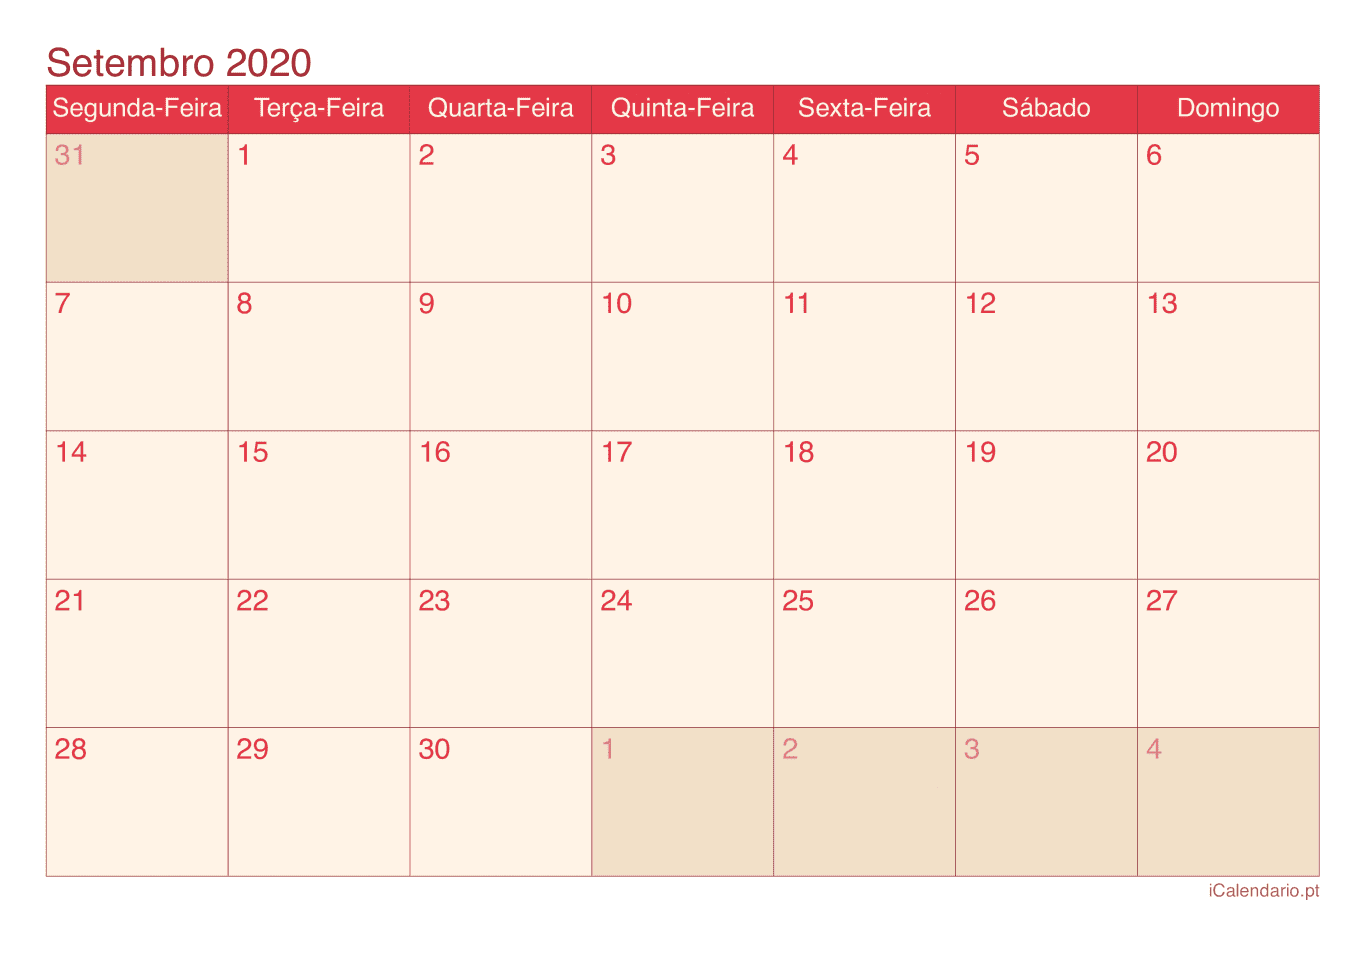 Calendário de setembro 2020 - Cherry